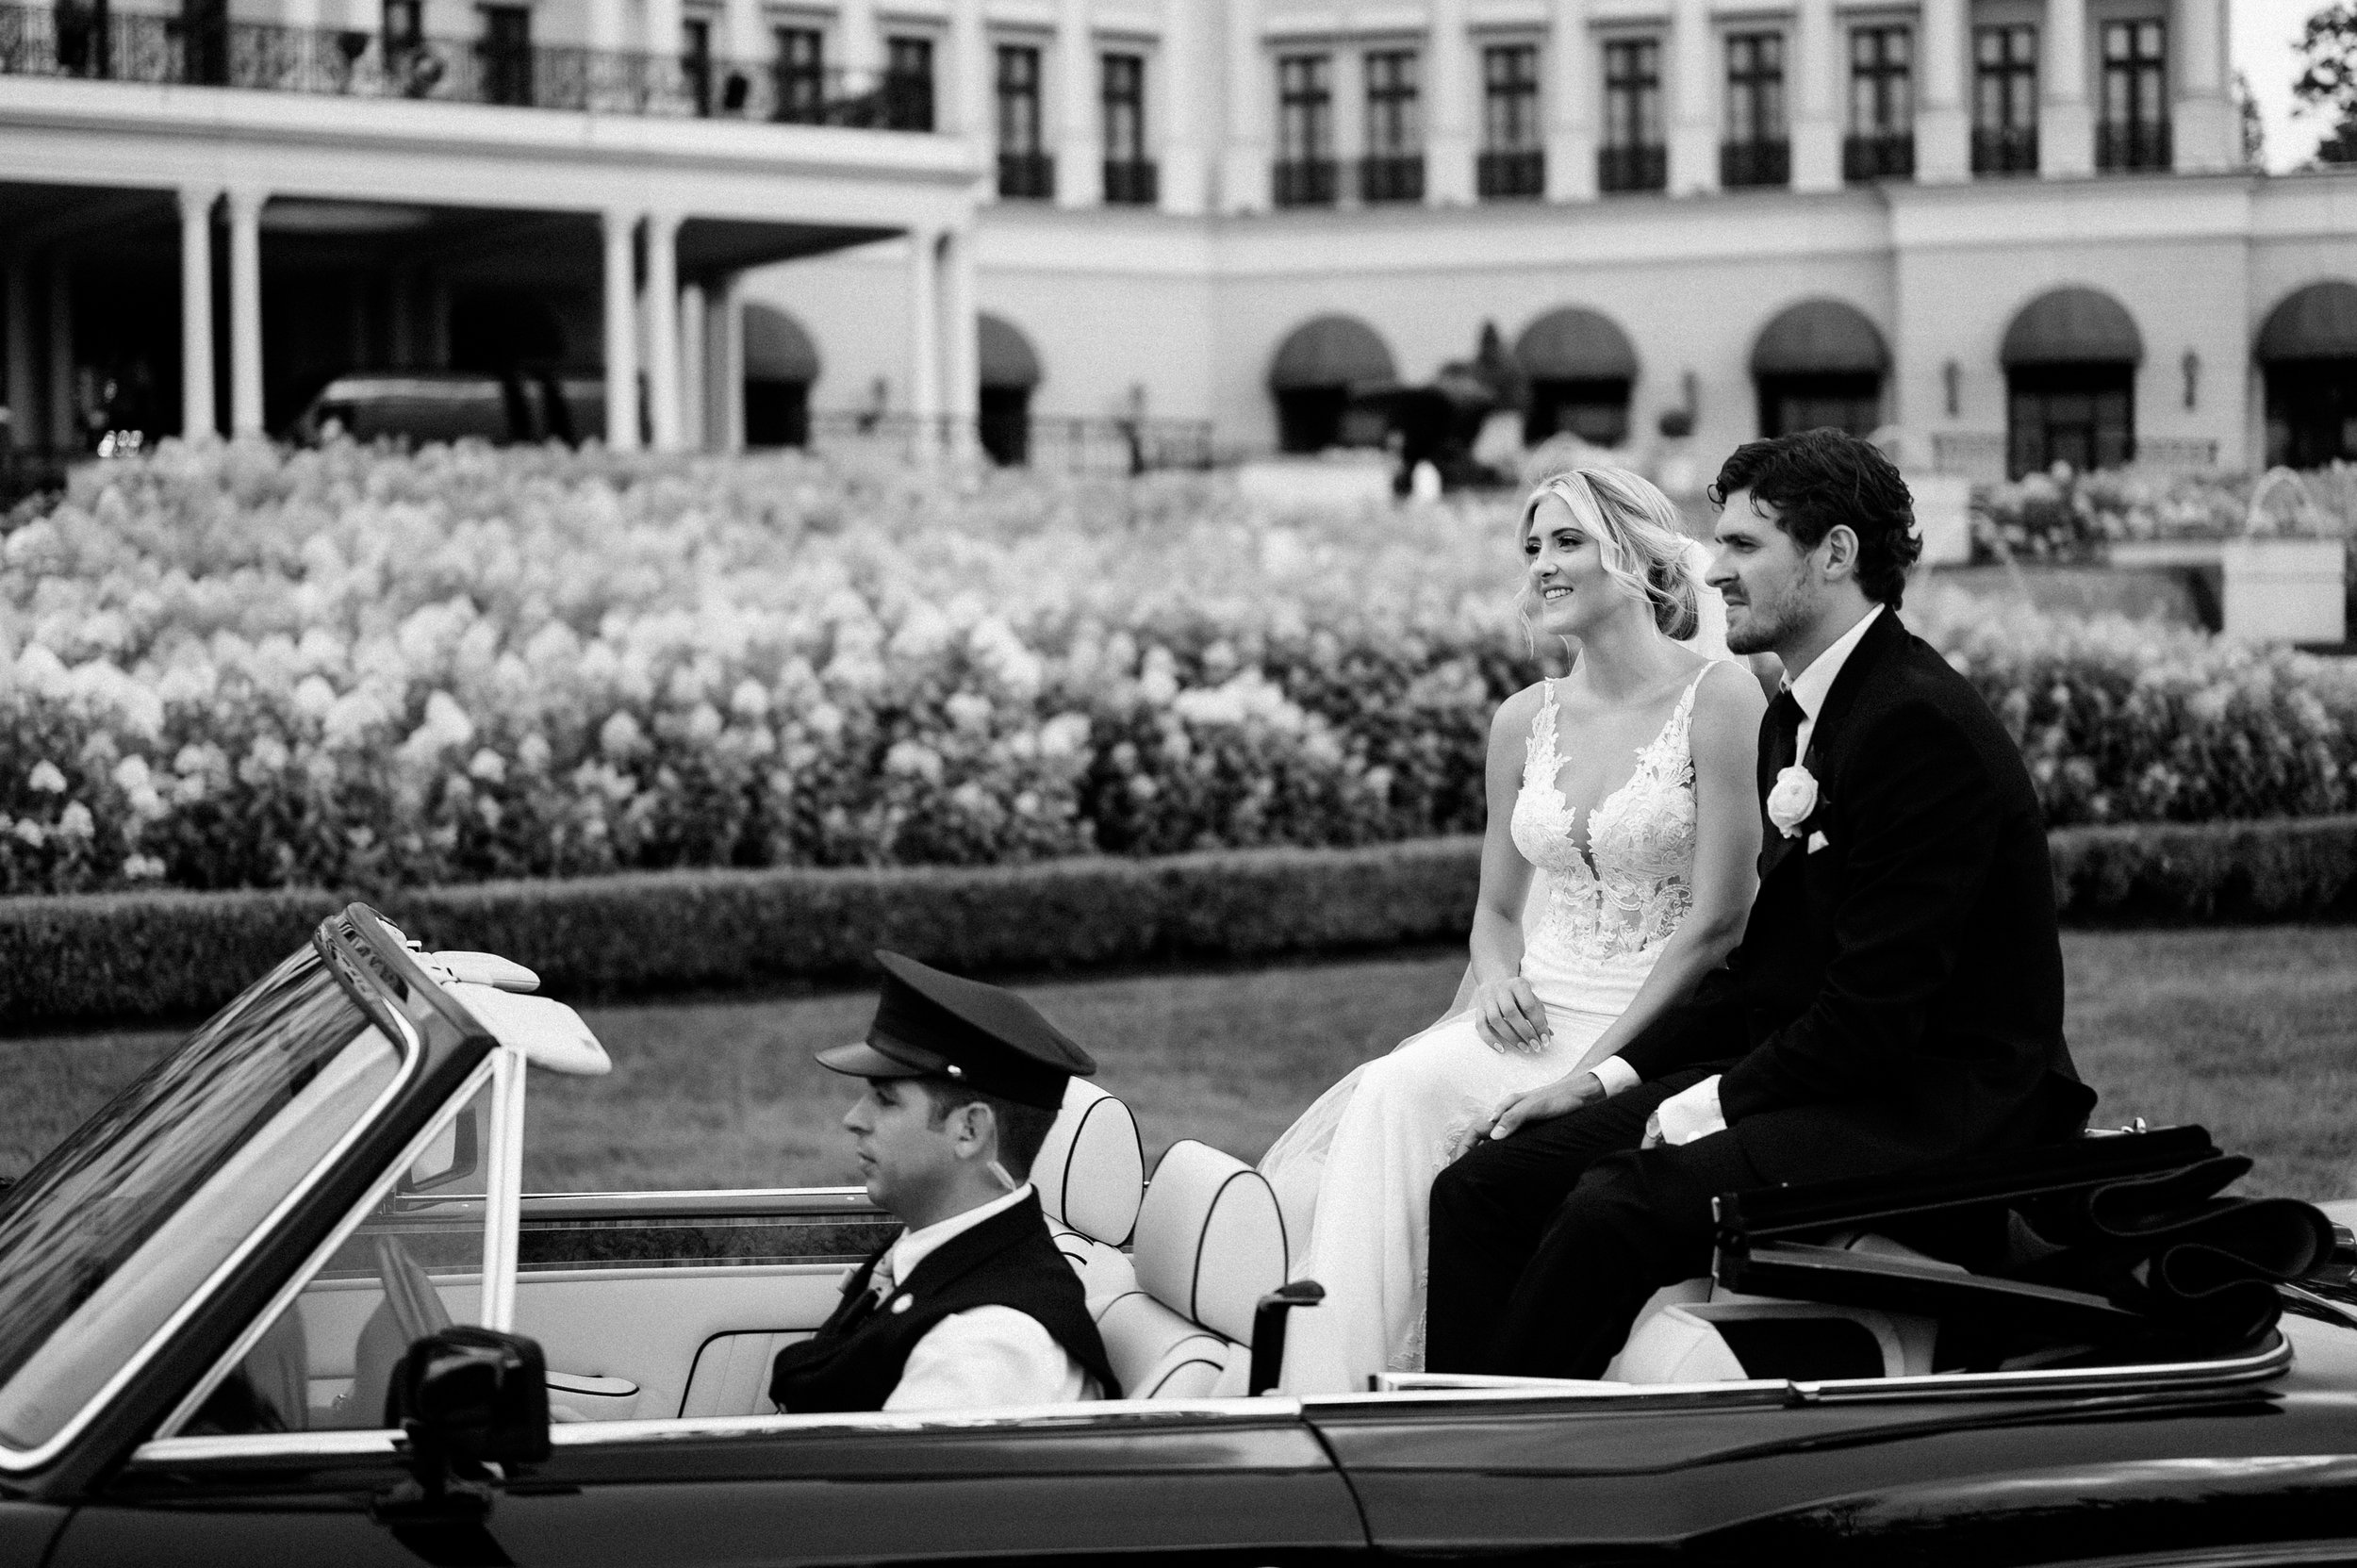 nemacolin luxury wedding pittsburgh wedding photographer-42.jpg